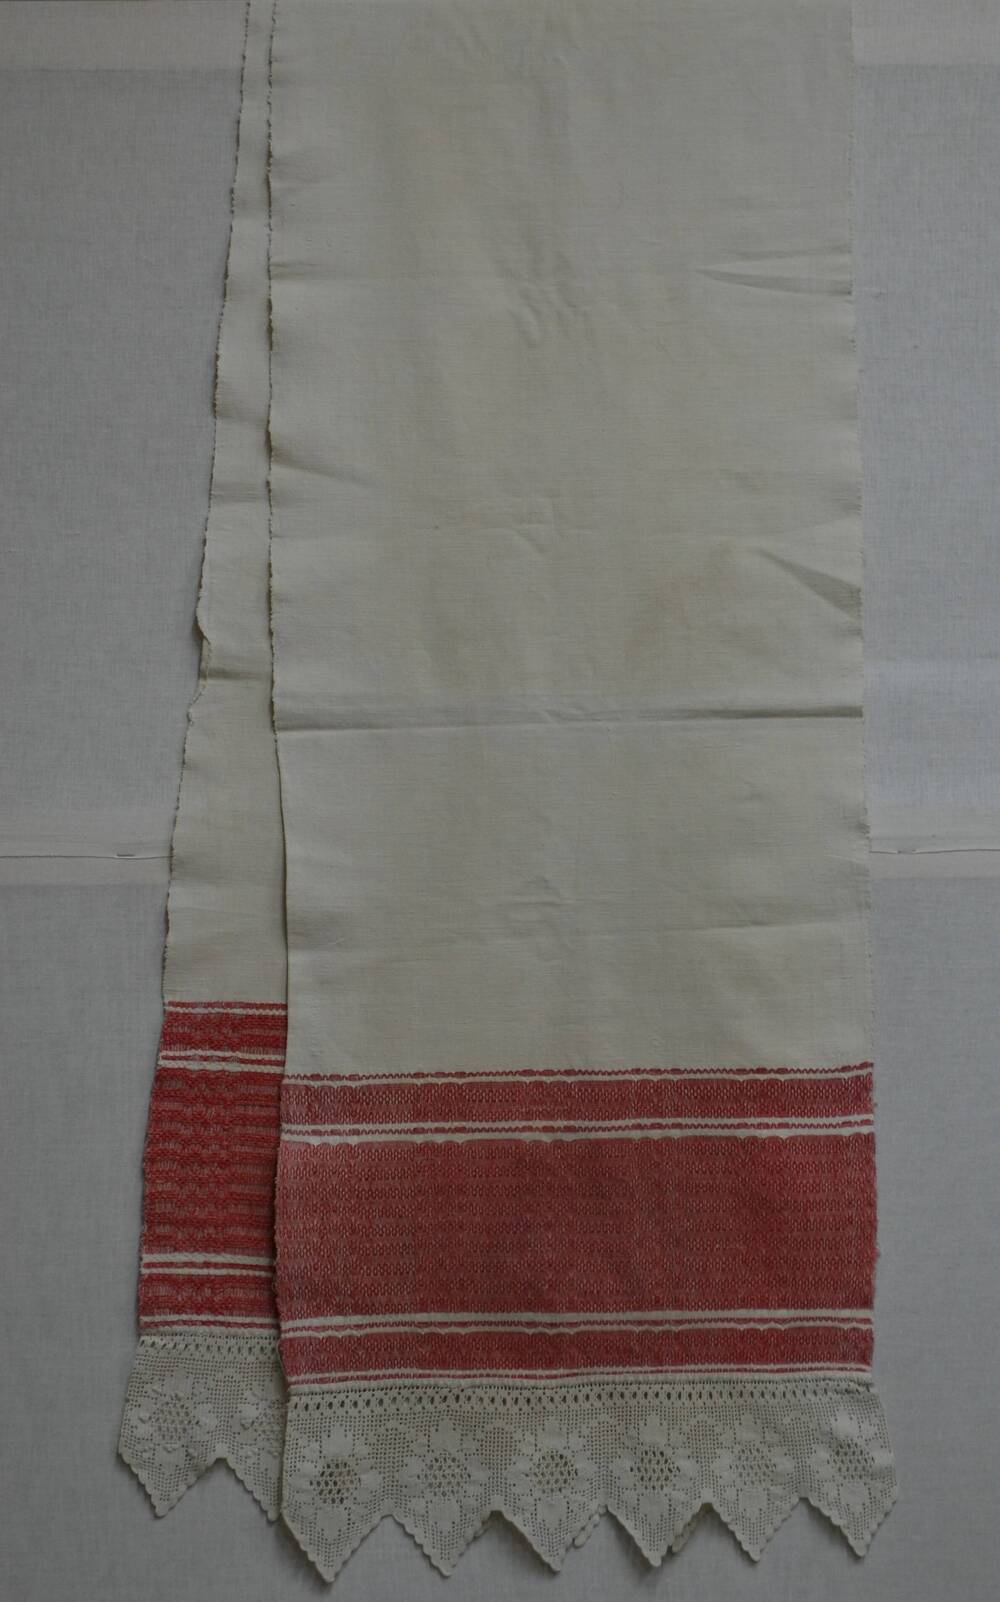 Полотенце домотканое, украшенное узором в технике пятиремизного ткачества.